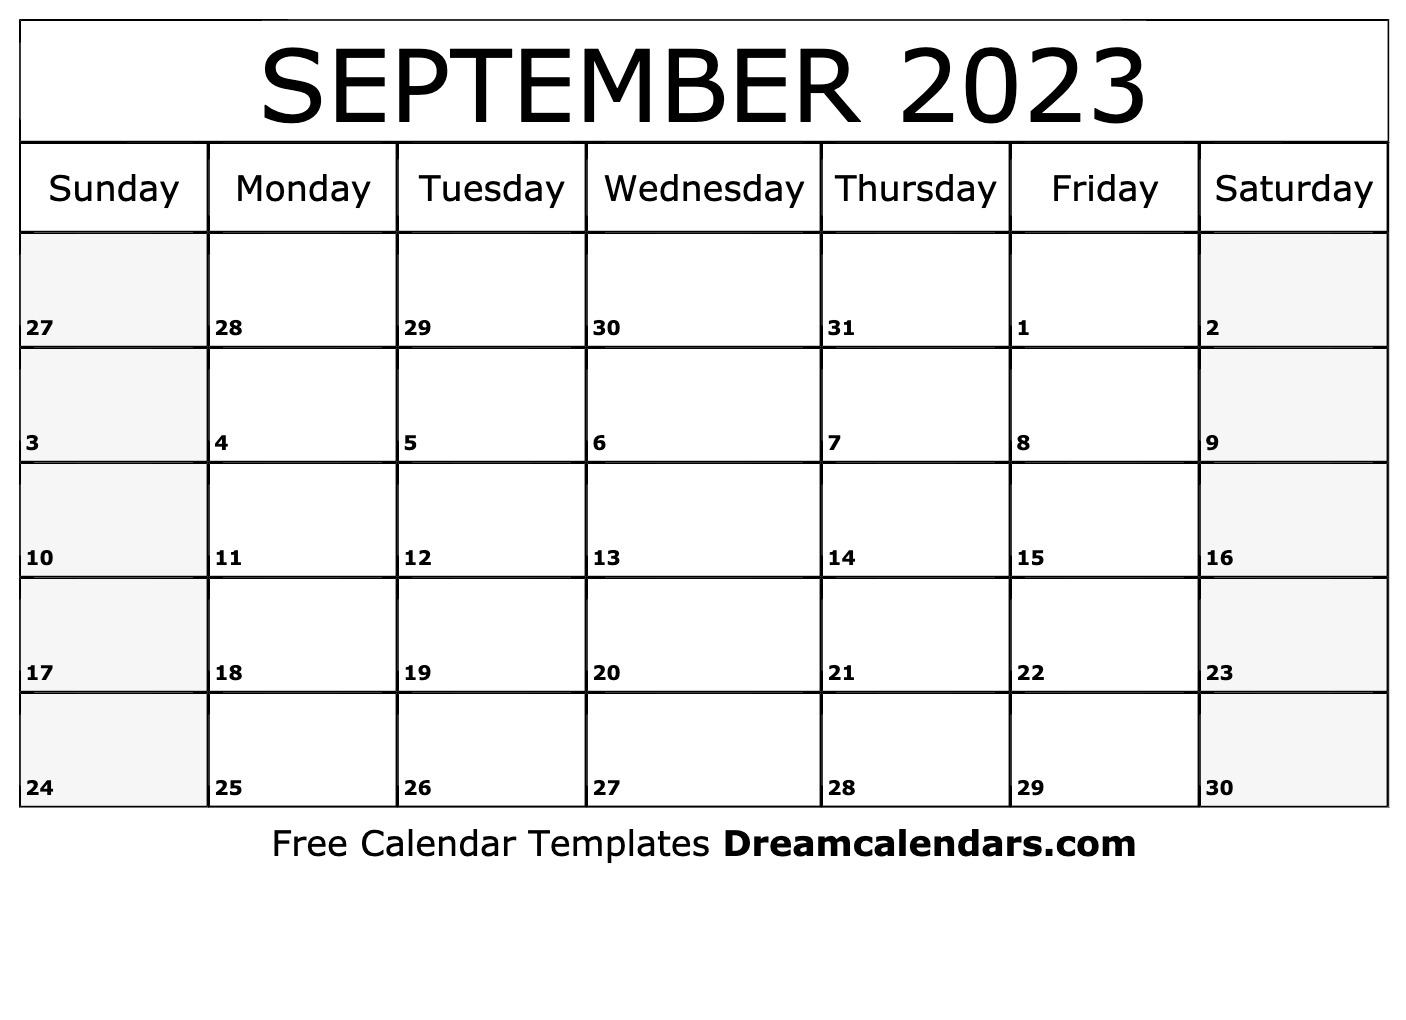 september-2023-calendar-doc-get-calendar-2023-update